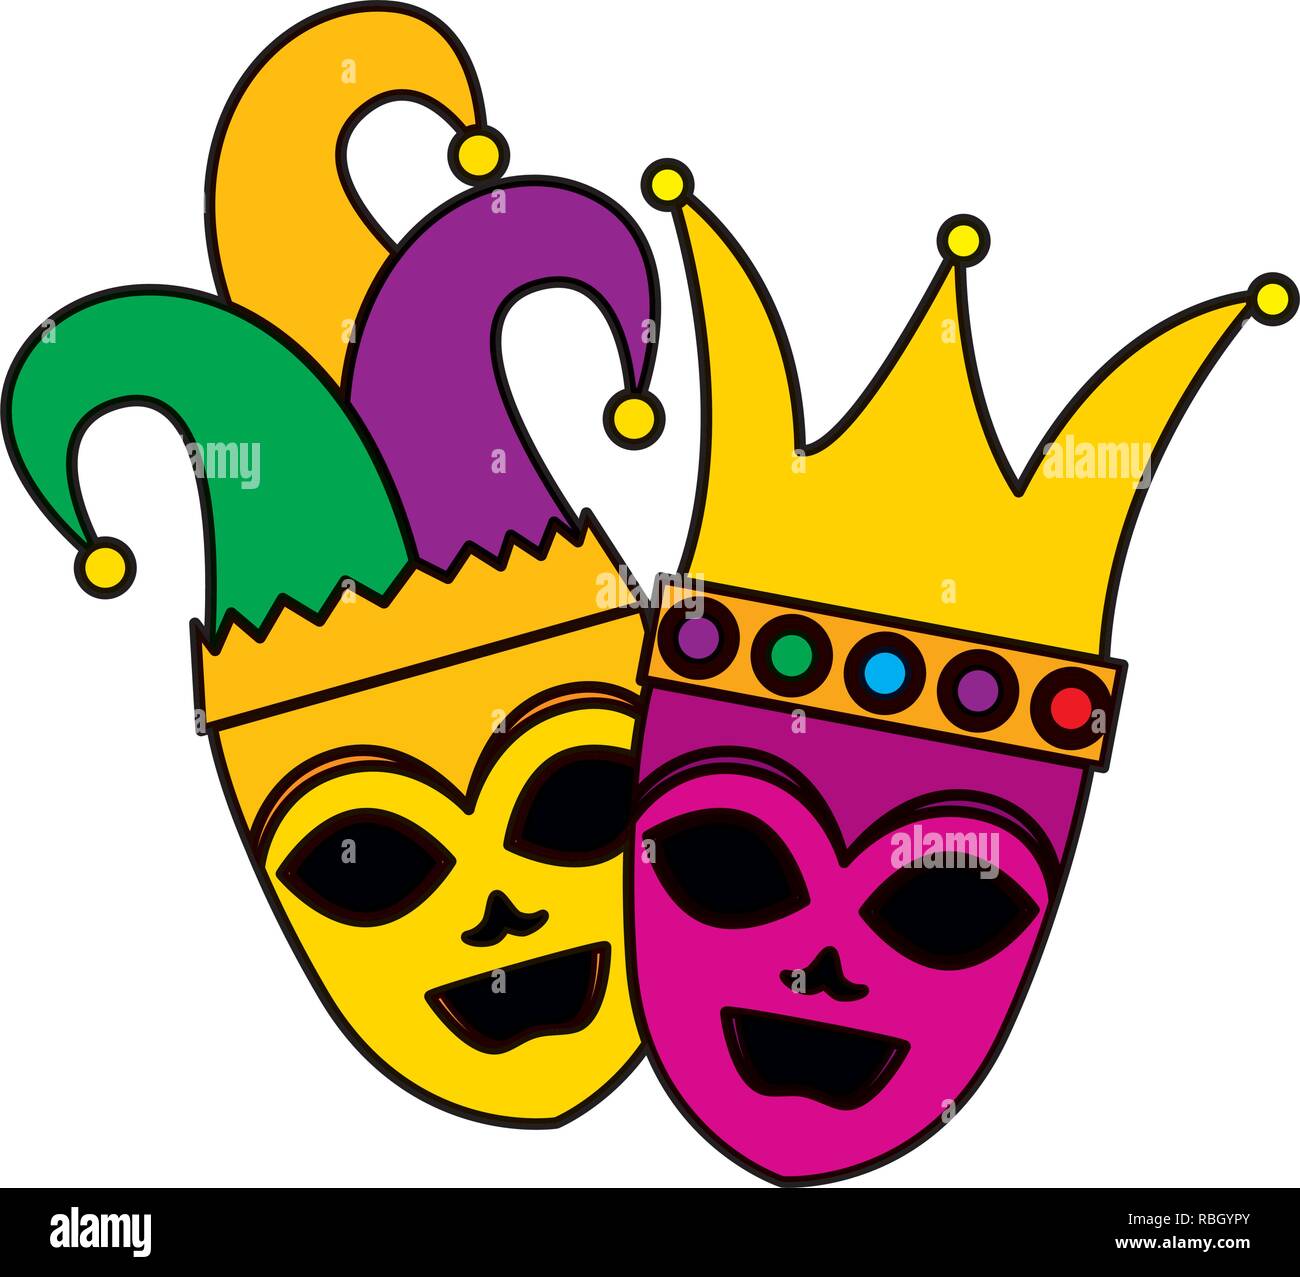 Teatro y máscaras de carnaval con sombrero de arlequín y corona